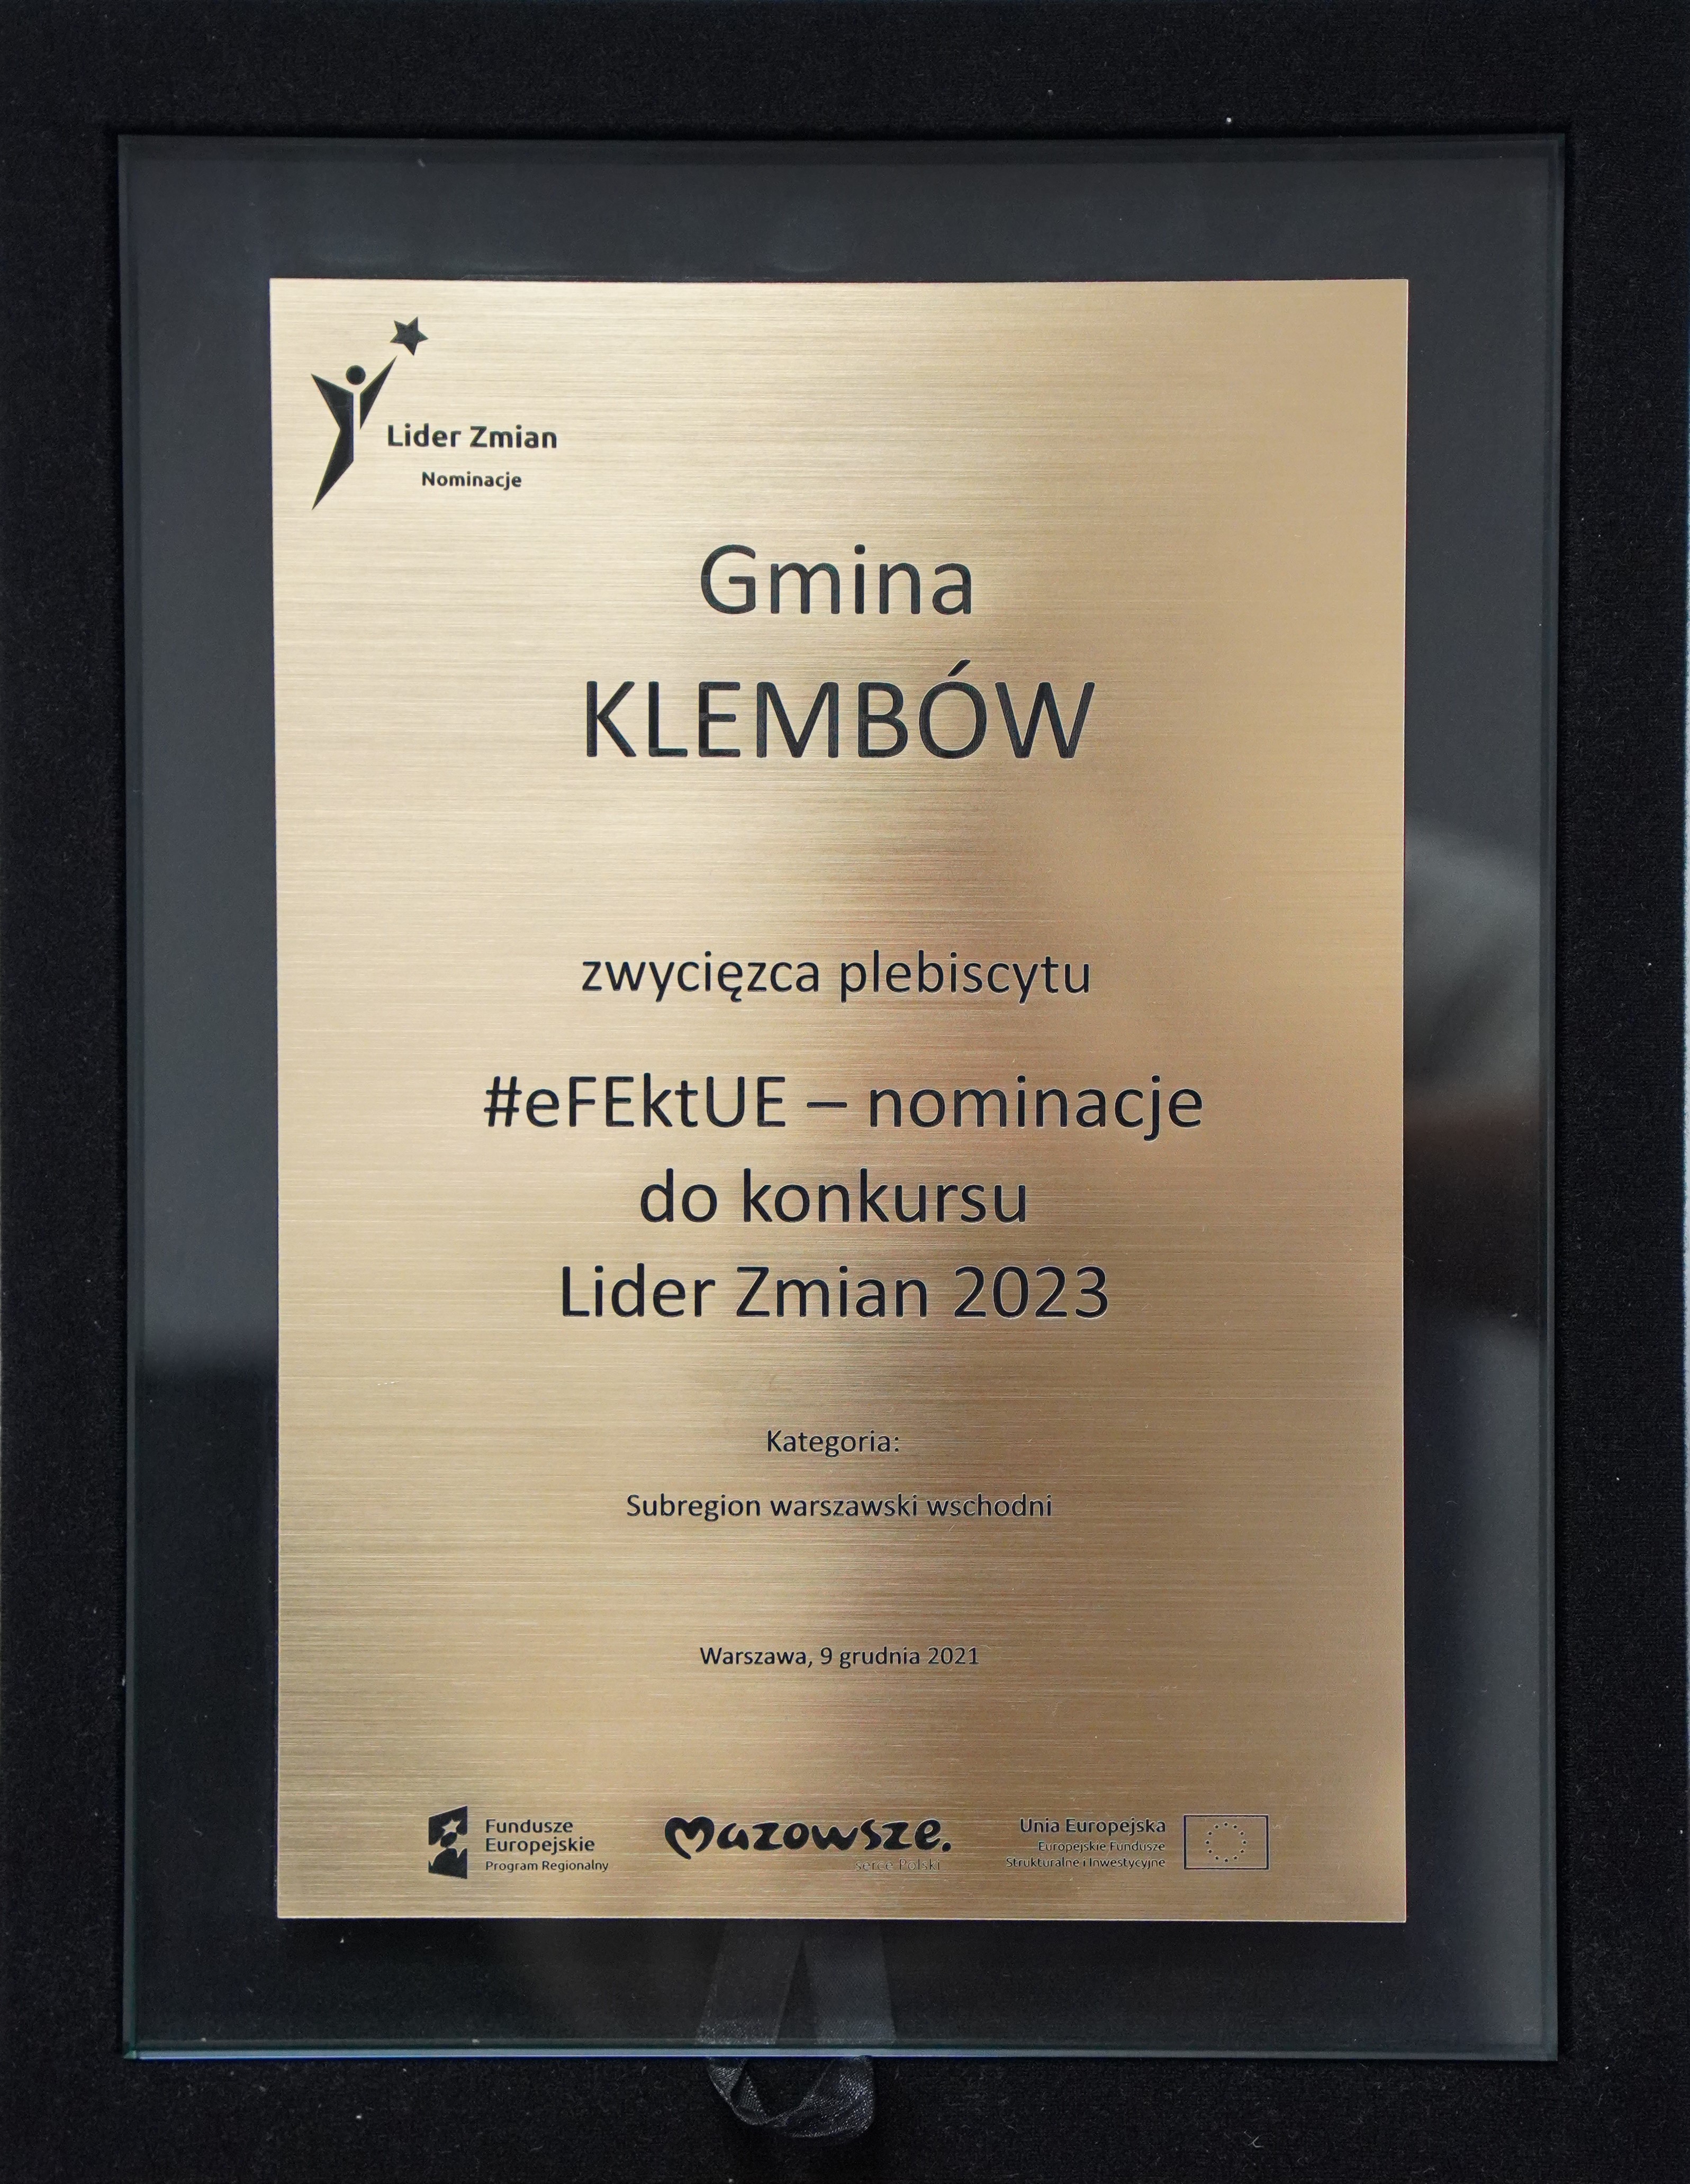 Nagroda w konkursie efektUE - tabliczka pamiątkowa dla Gminy Klembów za zwycięstwo w subregionie warszawskim wschodnim